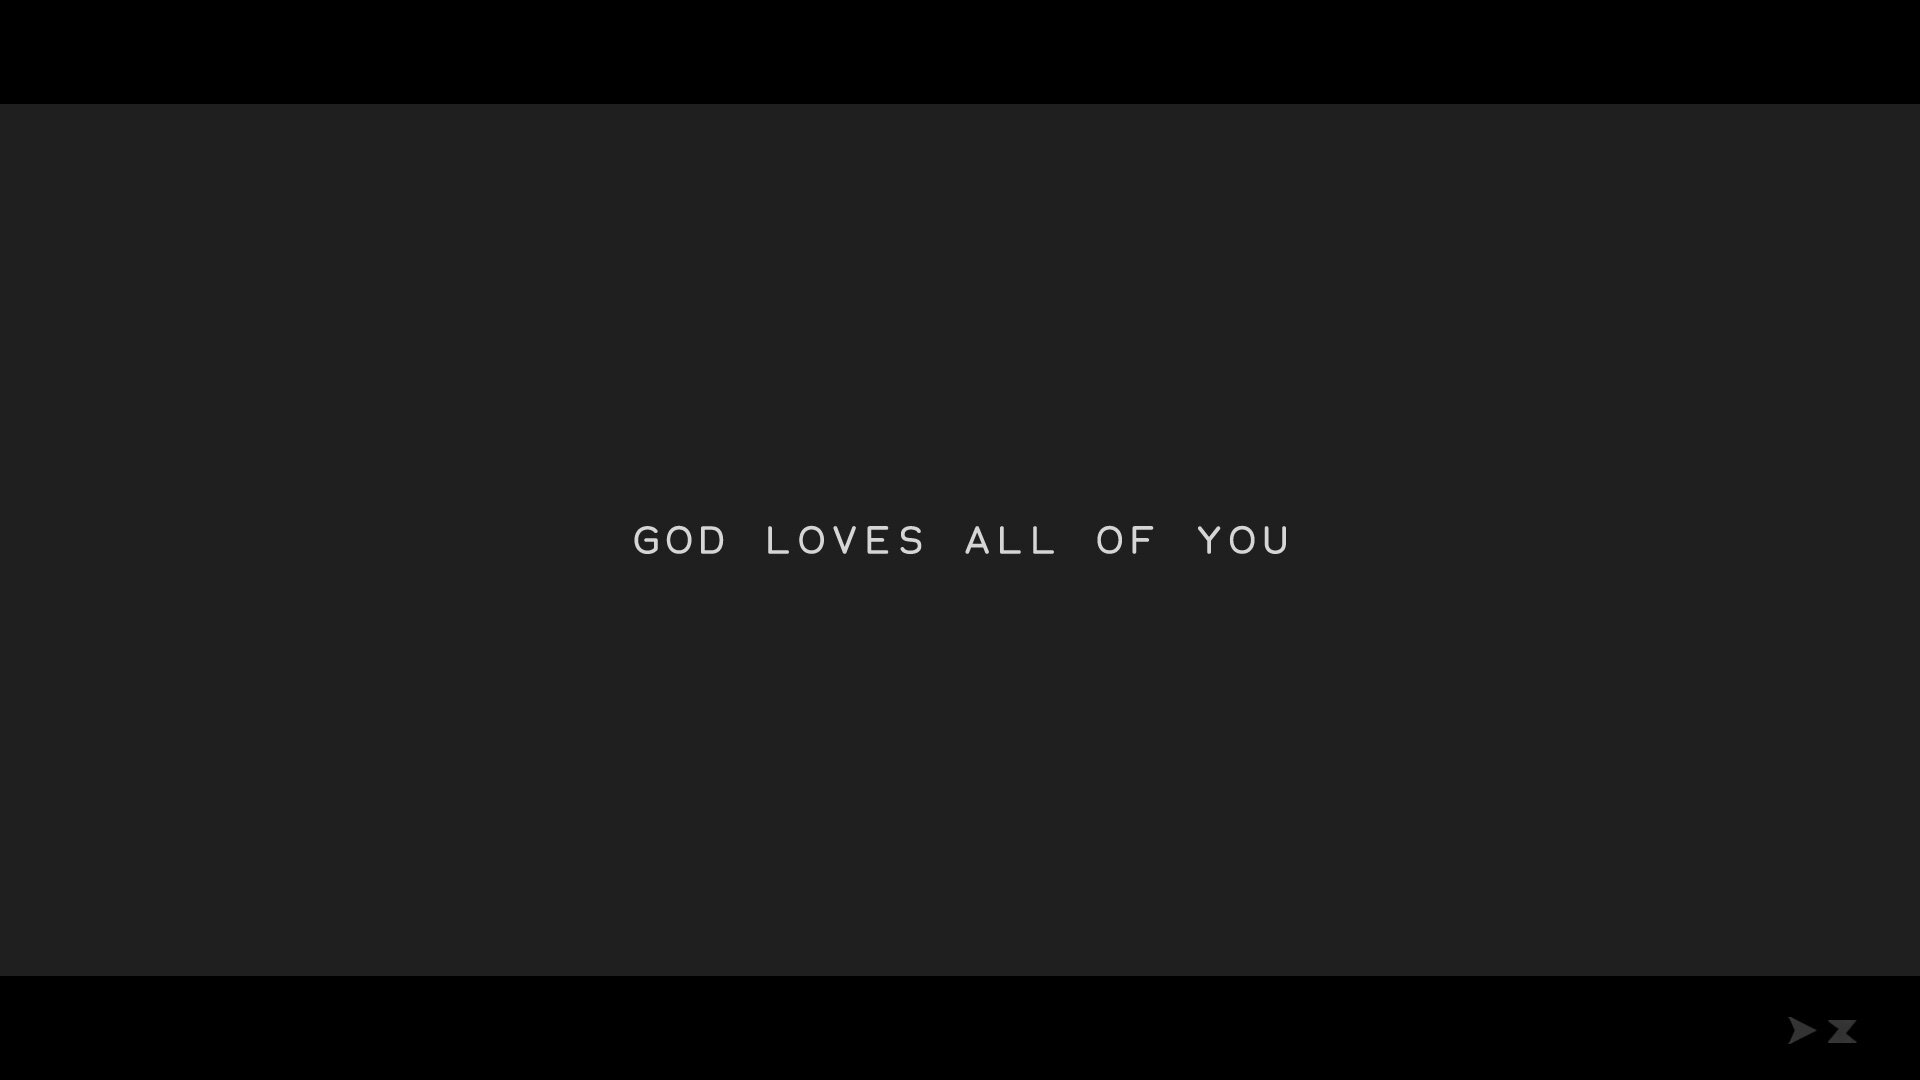 01_God-loves-all-of-you.jpg